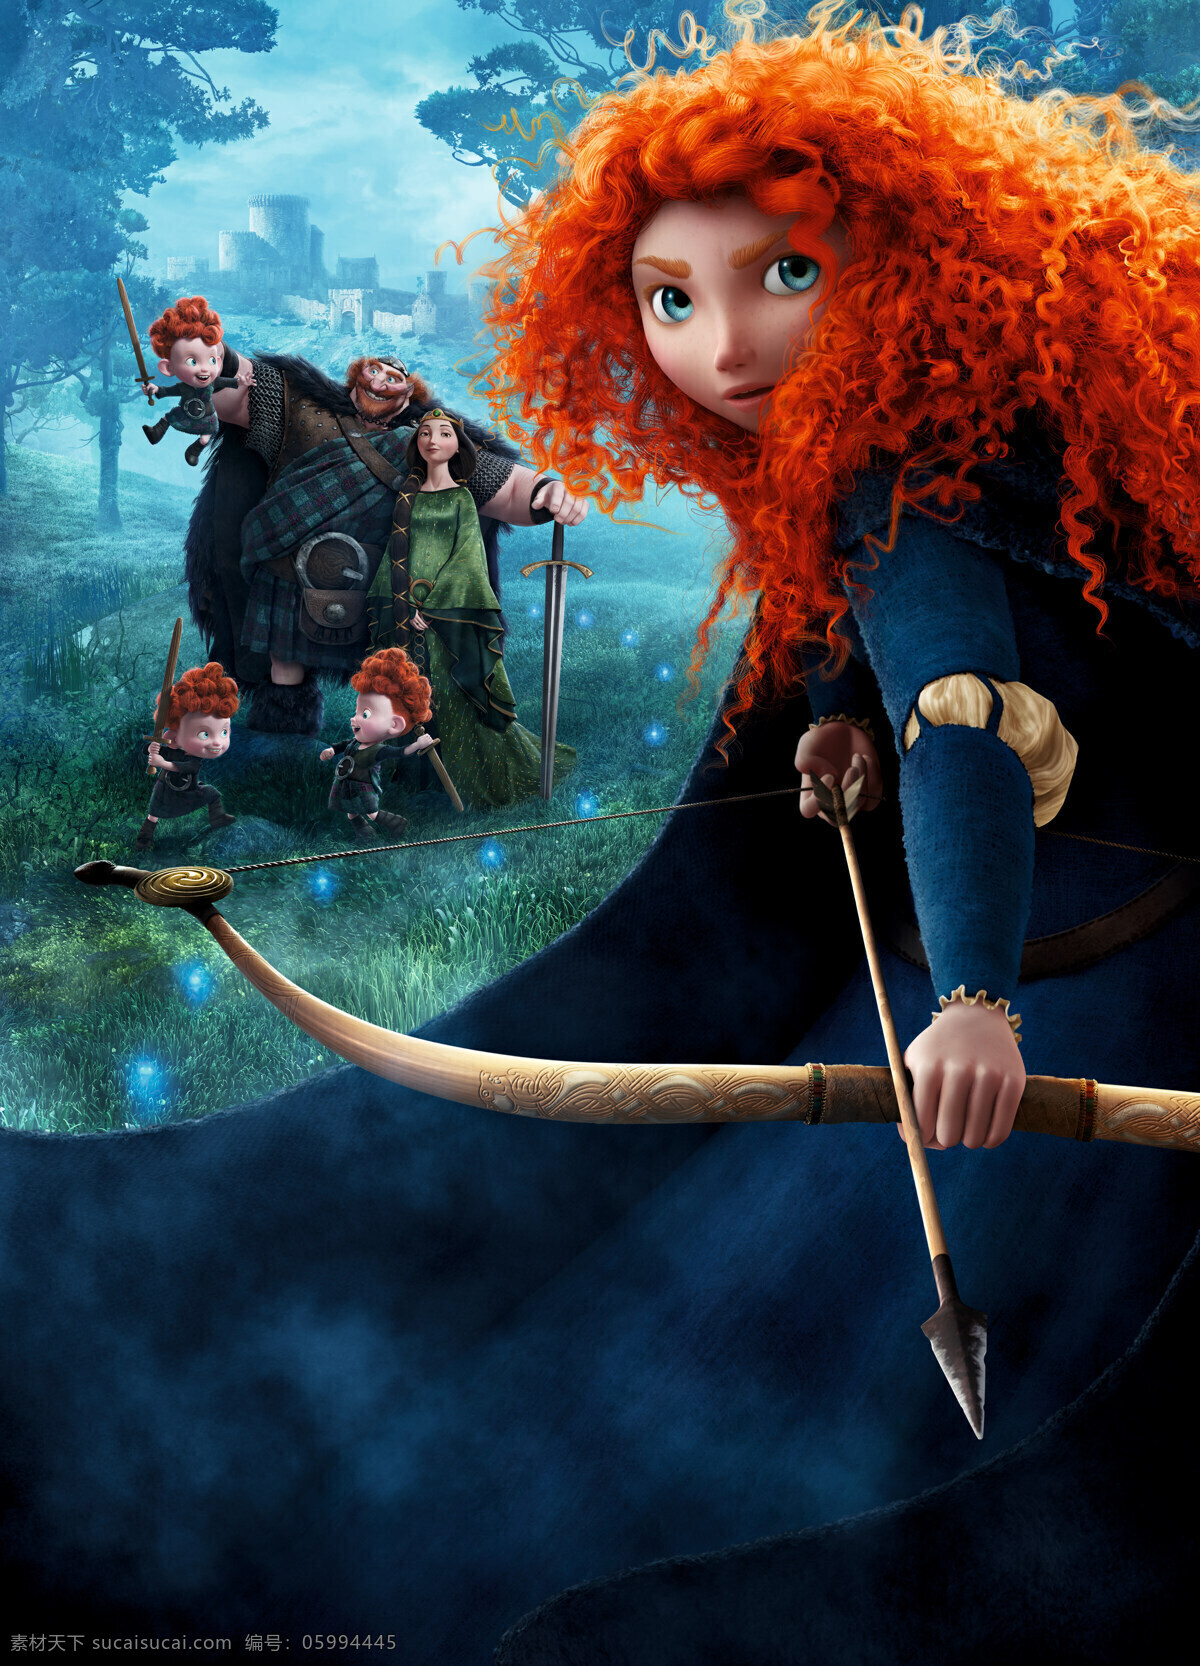 勇敢传说 幻险森林 勇敢的公主 迪士尼 动画电影 海报 电影海报剧照 动画卡通电影